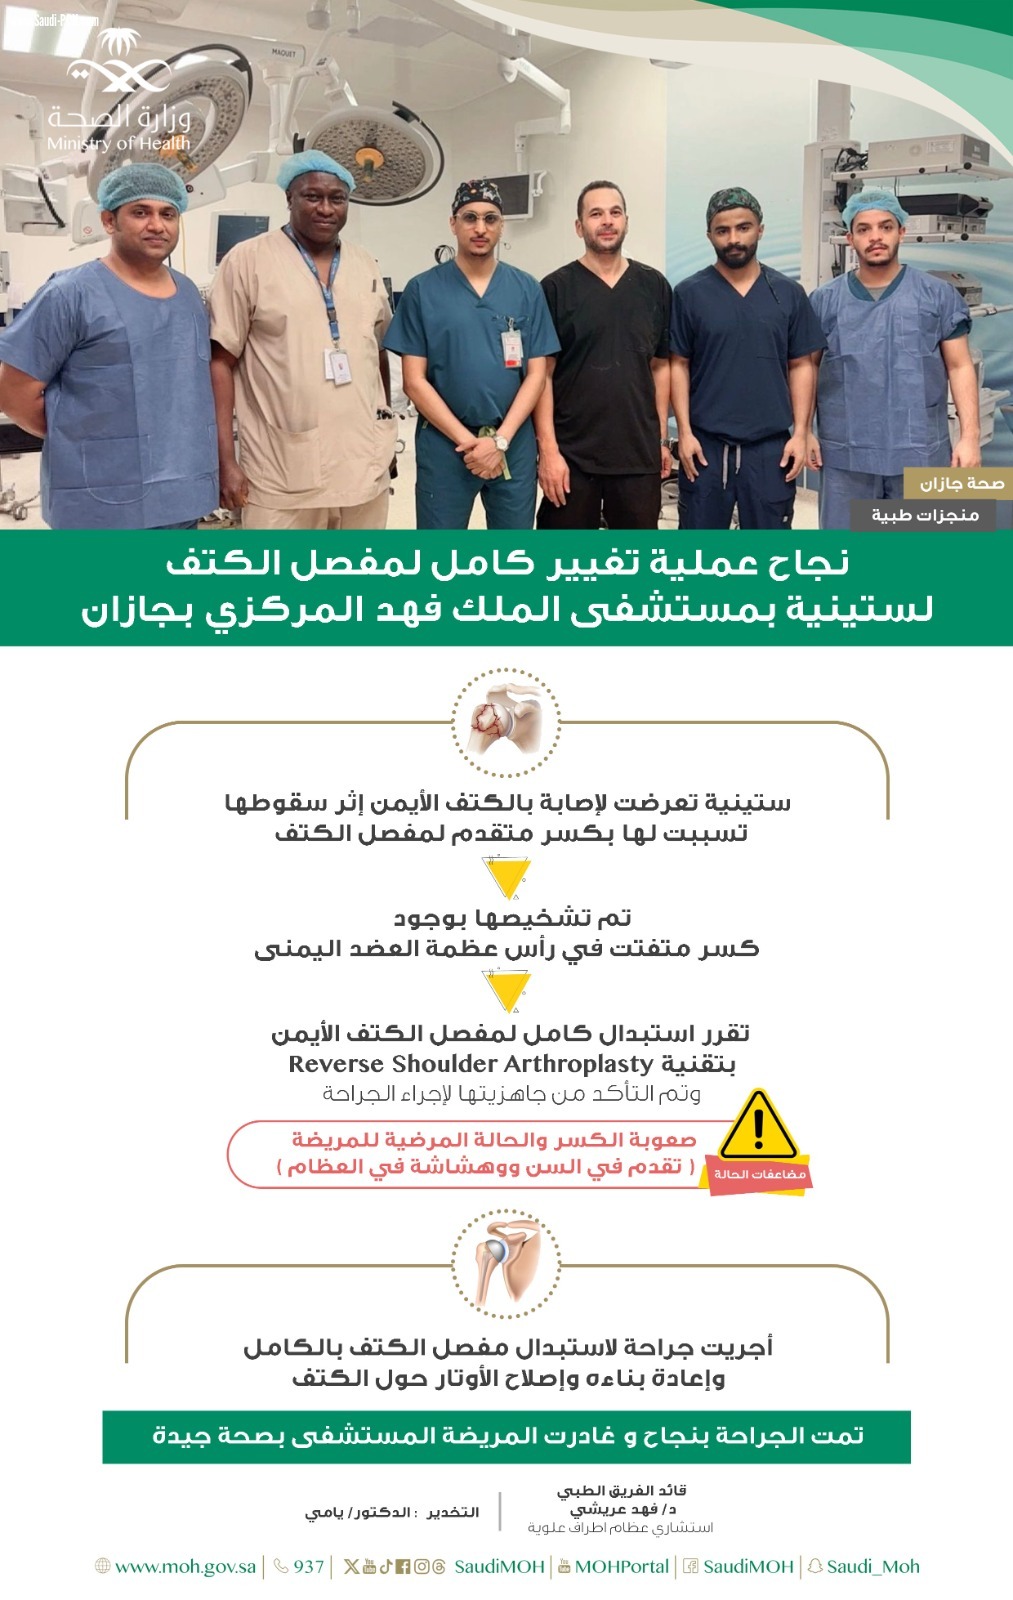 نجاح عملية تغيير كامل لمفصل الكتف لستينية بمستشفى الملك فهد المركزي بــجازان 